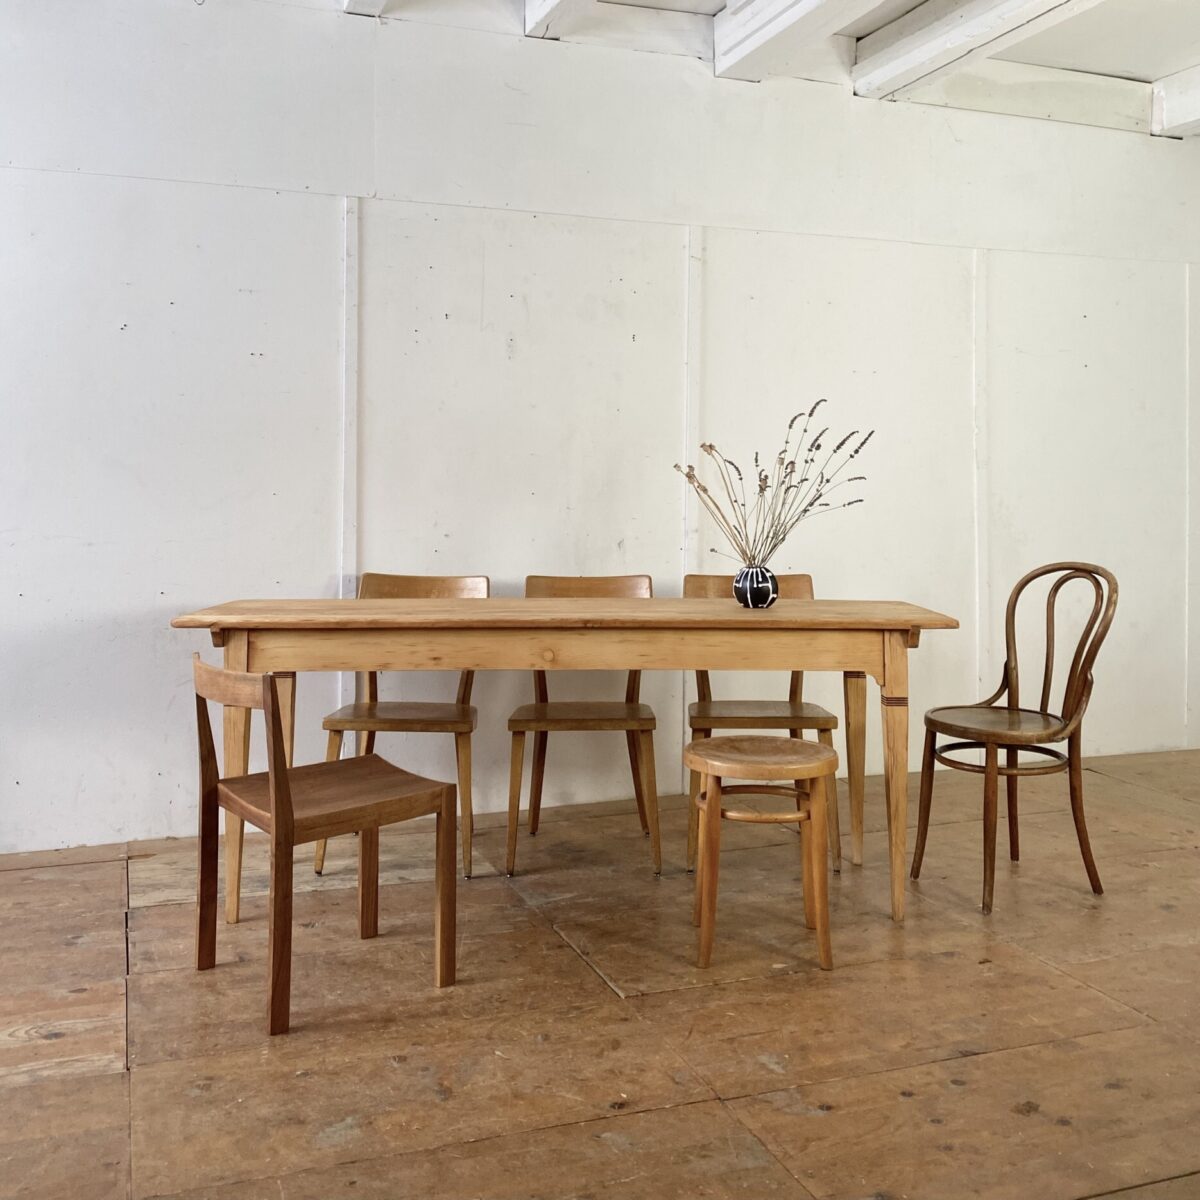 Deuxieme.shop alter Holztisch Beizentisch. Tannenholz Biedermeiertisch. 200x65cm Höhe 76.5cm. Der Tisch ist in stabilem aufbereiteten Zustand. Die Holz Oberflächen sind mit Naturöl behandelt. Es finden bis zu 8 Personen daran Platz. 